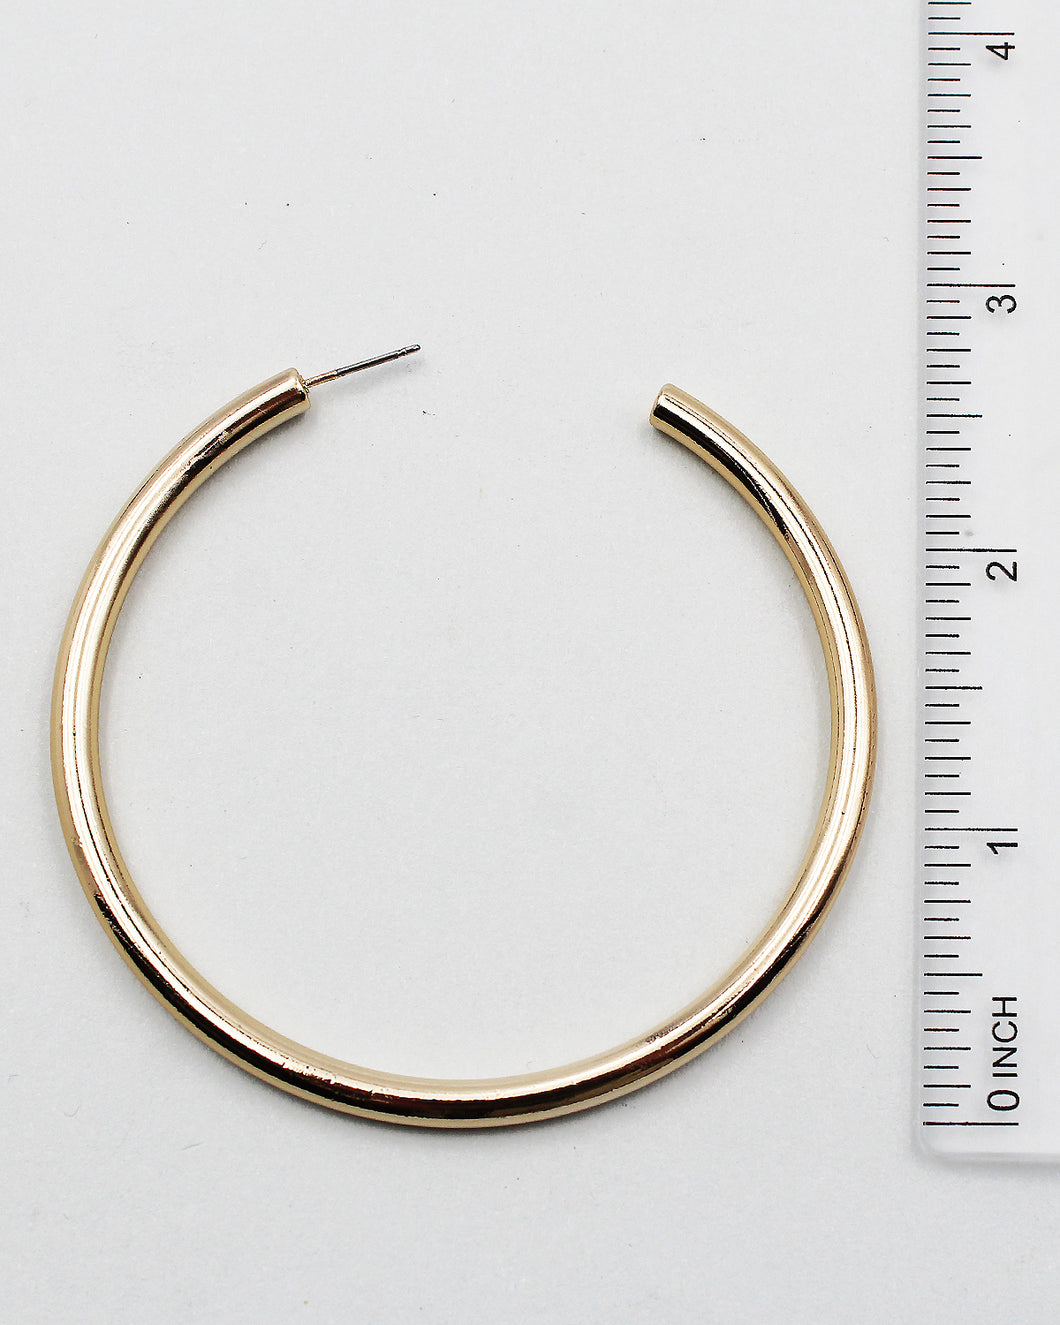 2.5 Inch Shiny Metal Hoop Earrings